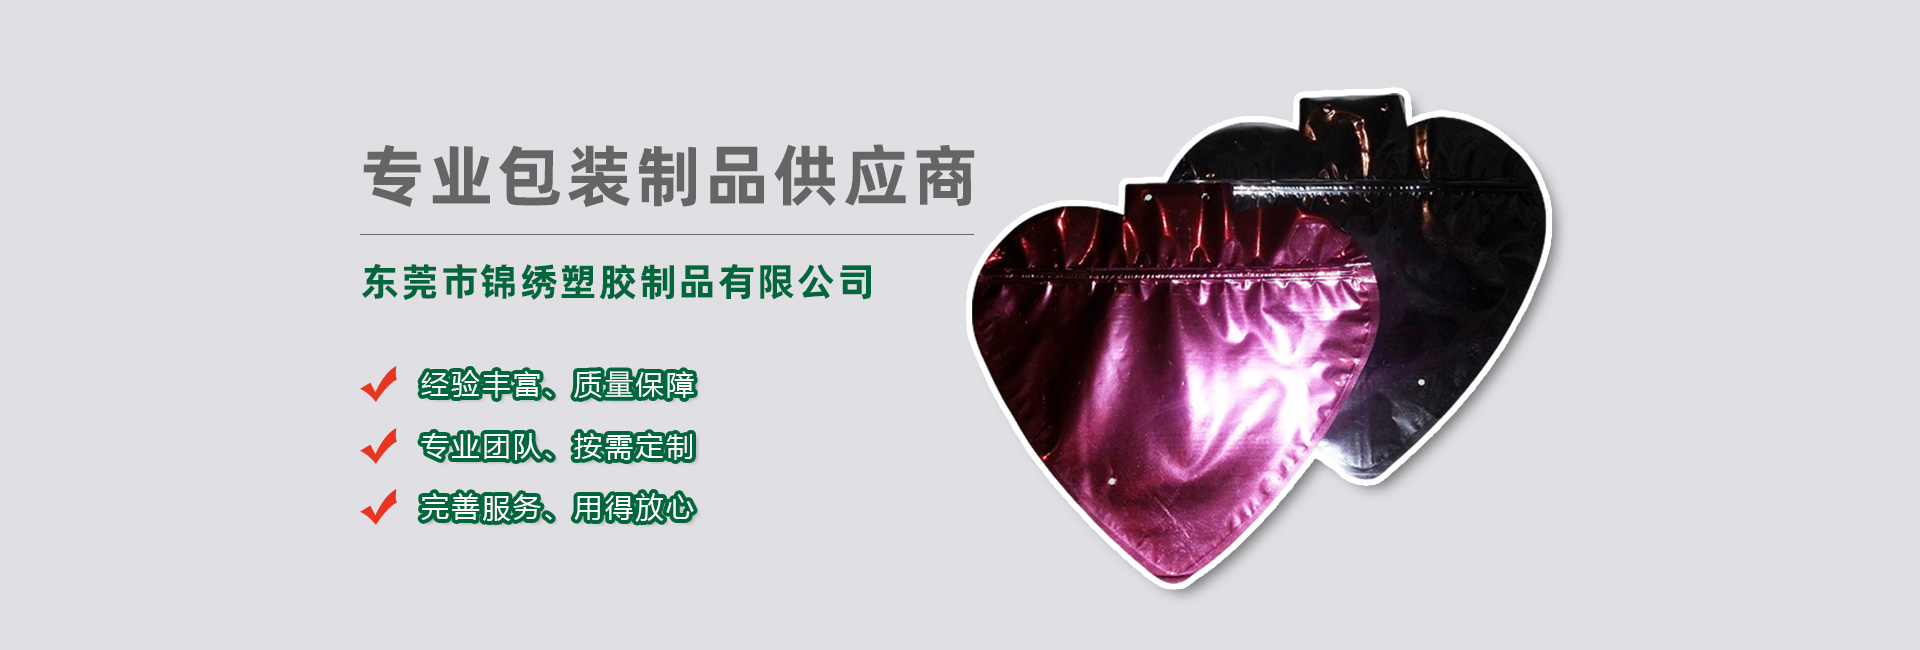 云南食品袋banner